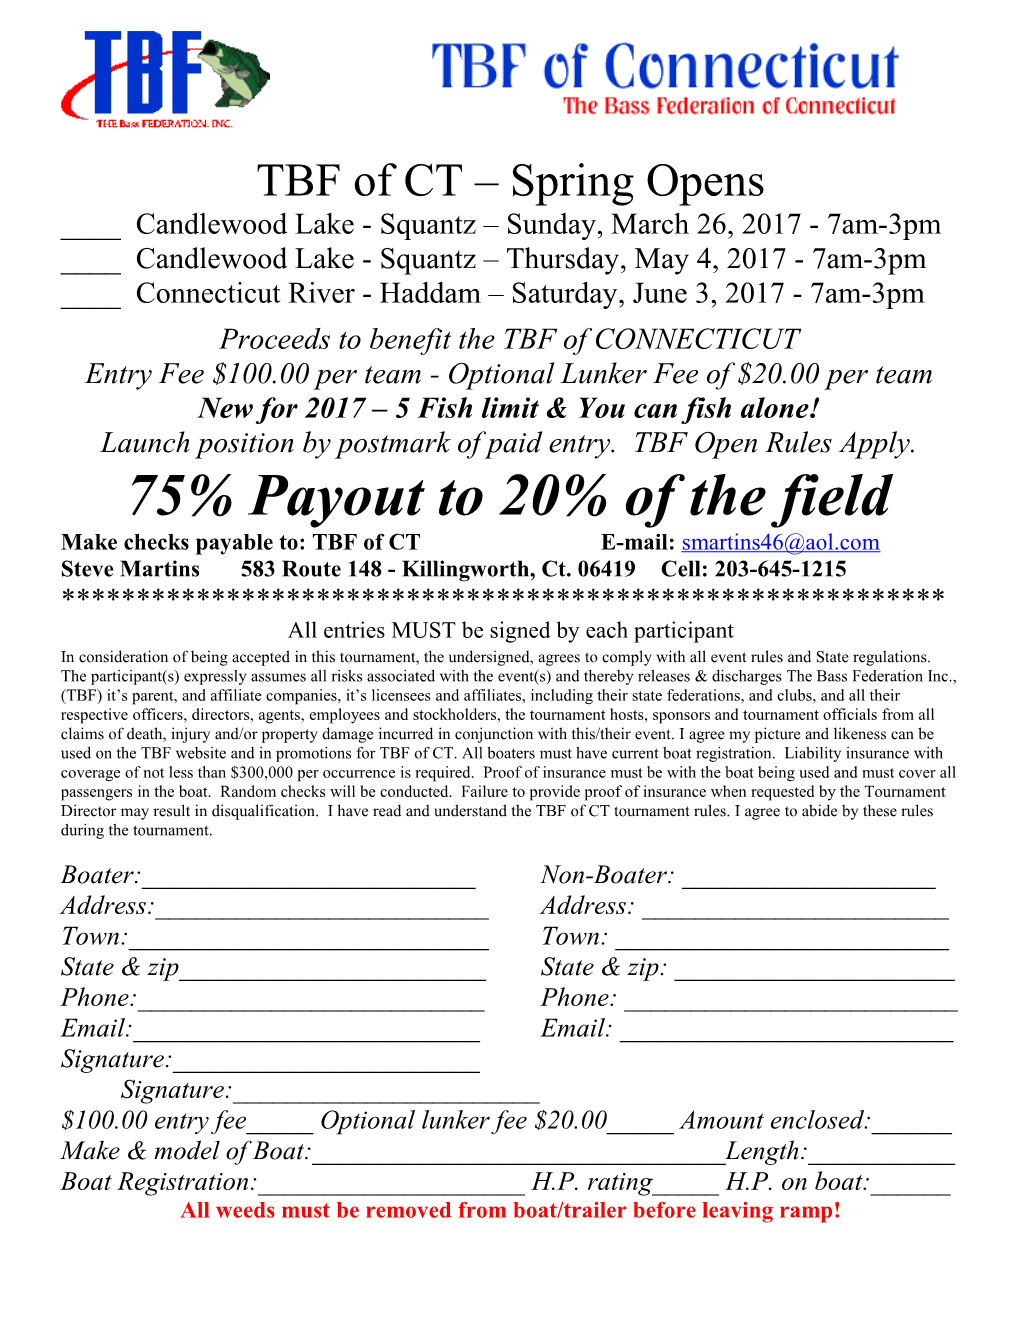 TBF of CT Springopens